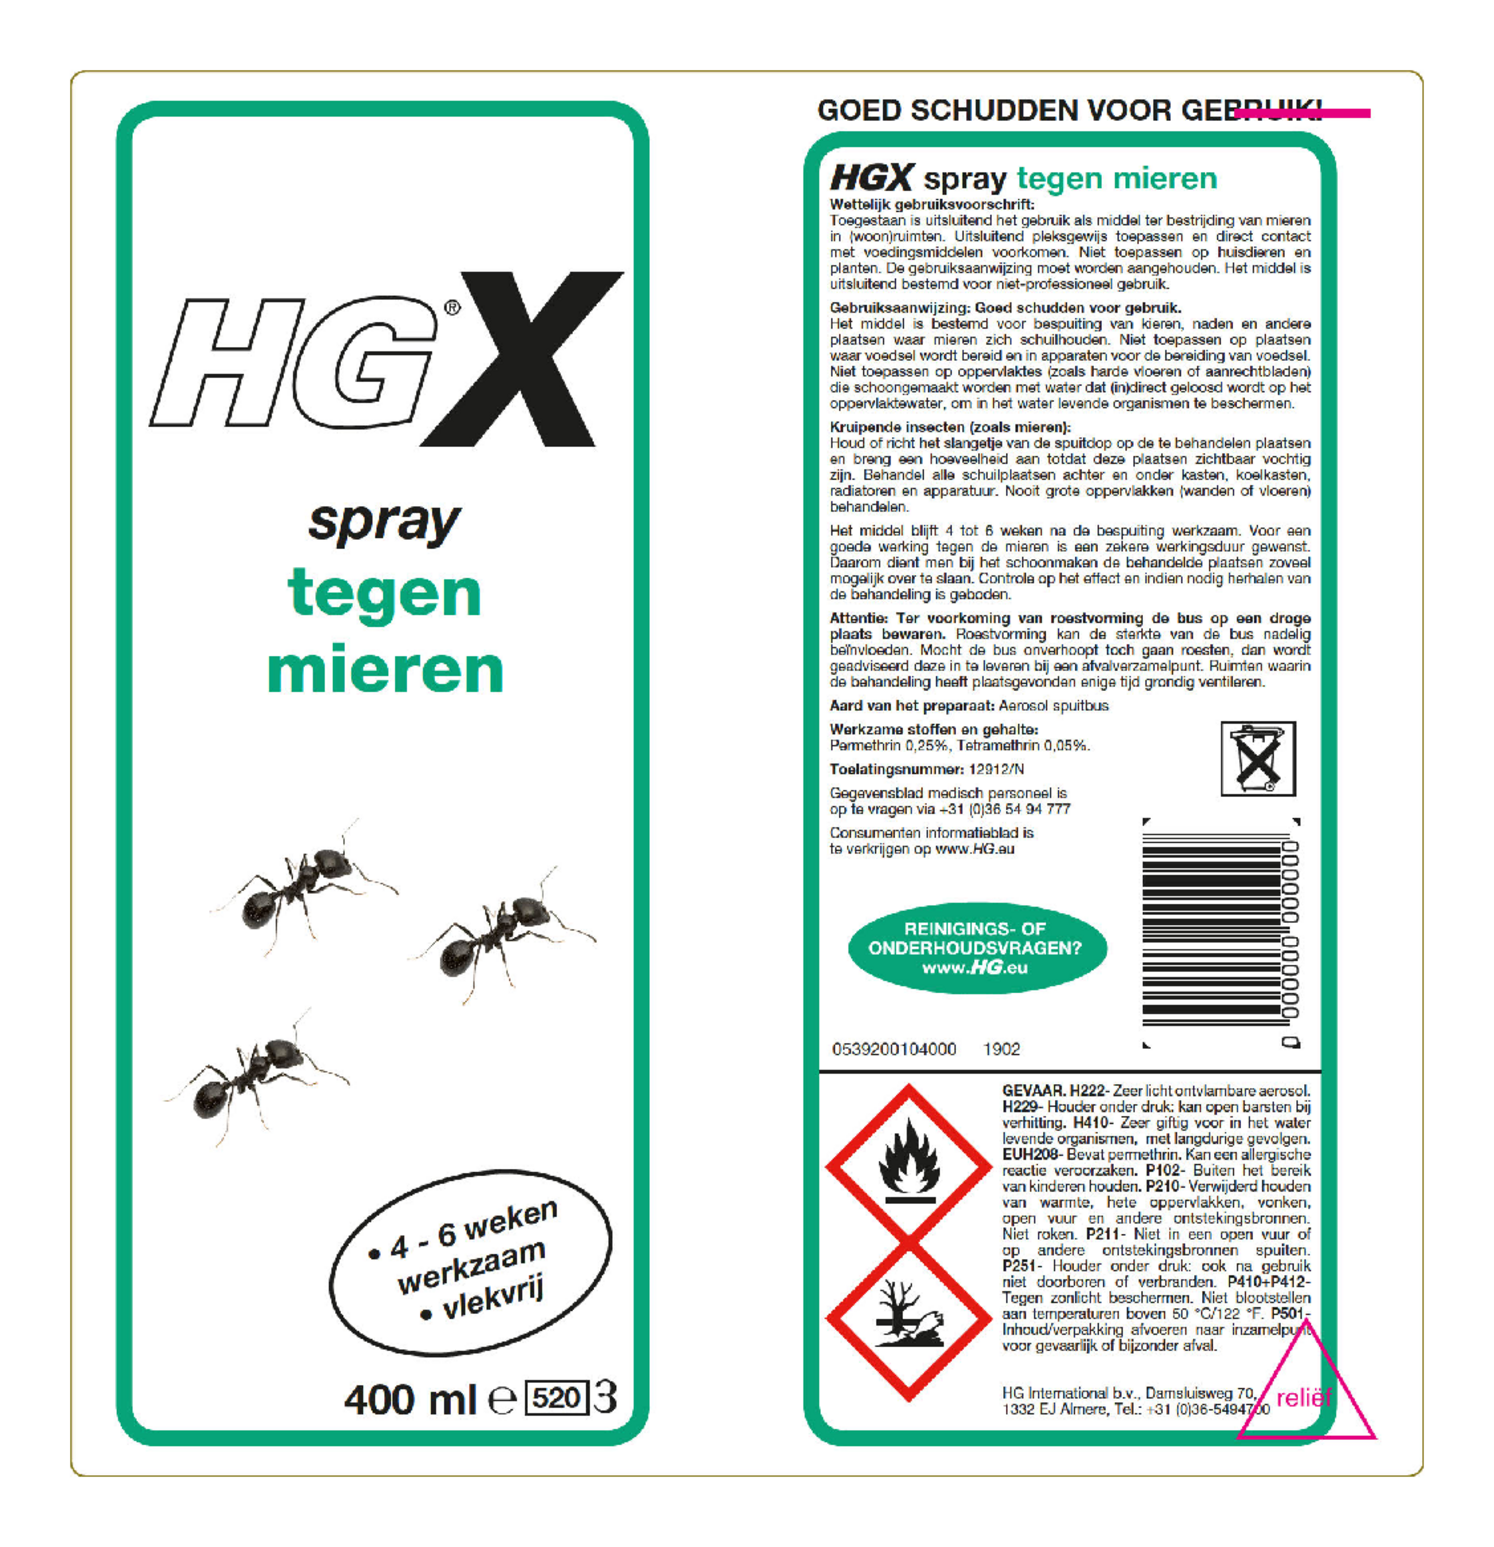 X Spray Tegen Mieren afbeelding van document #1, etiket